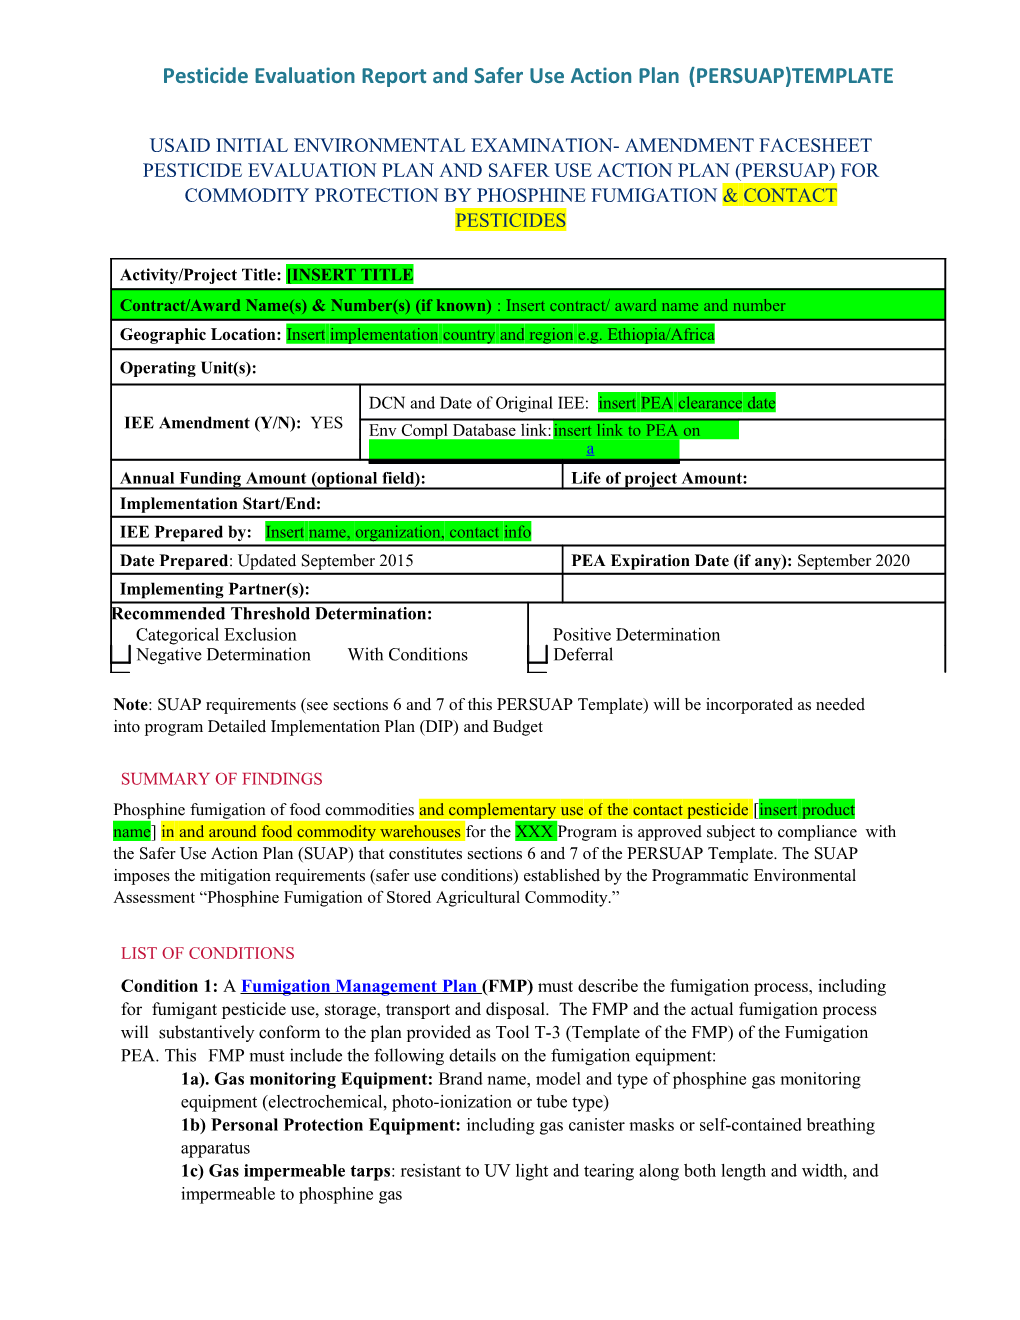 Pesticideevaluation Reportandsaferuseactionplan(PERSUAP)TEMPLATE